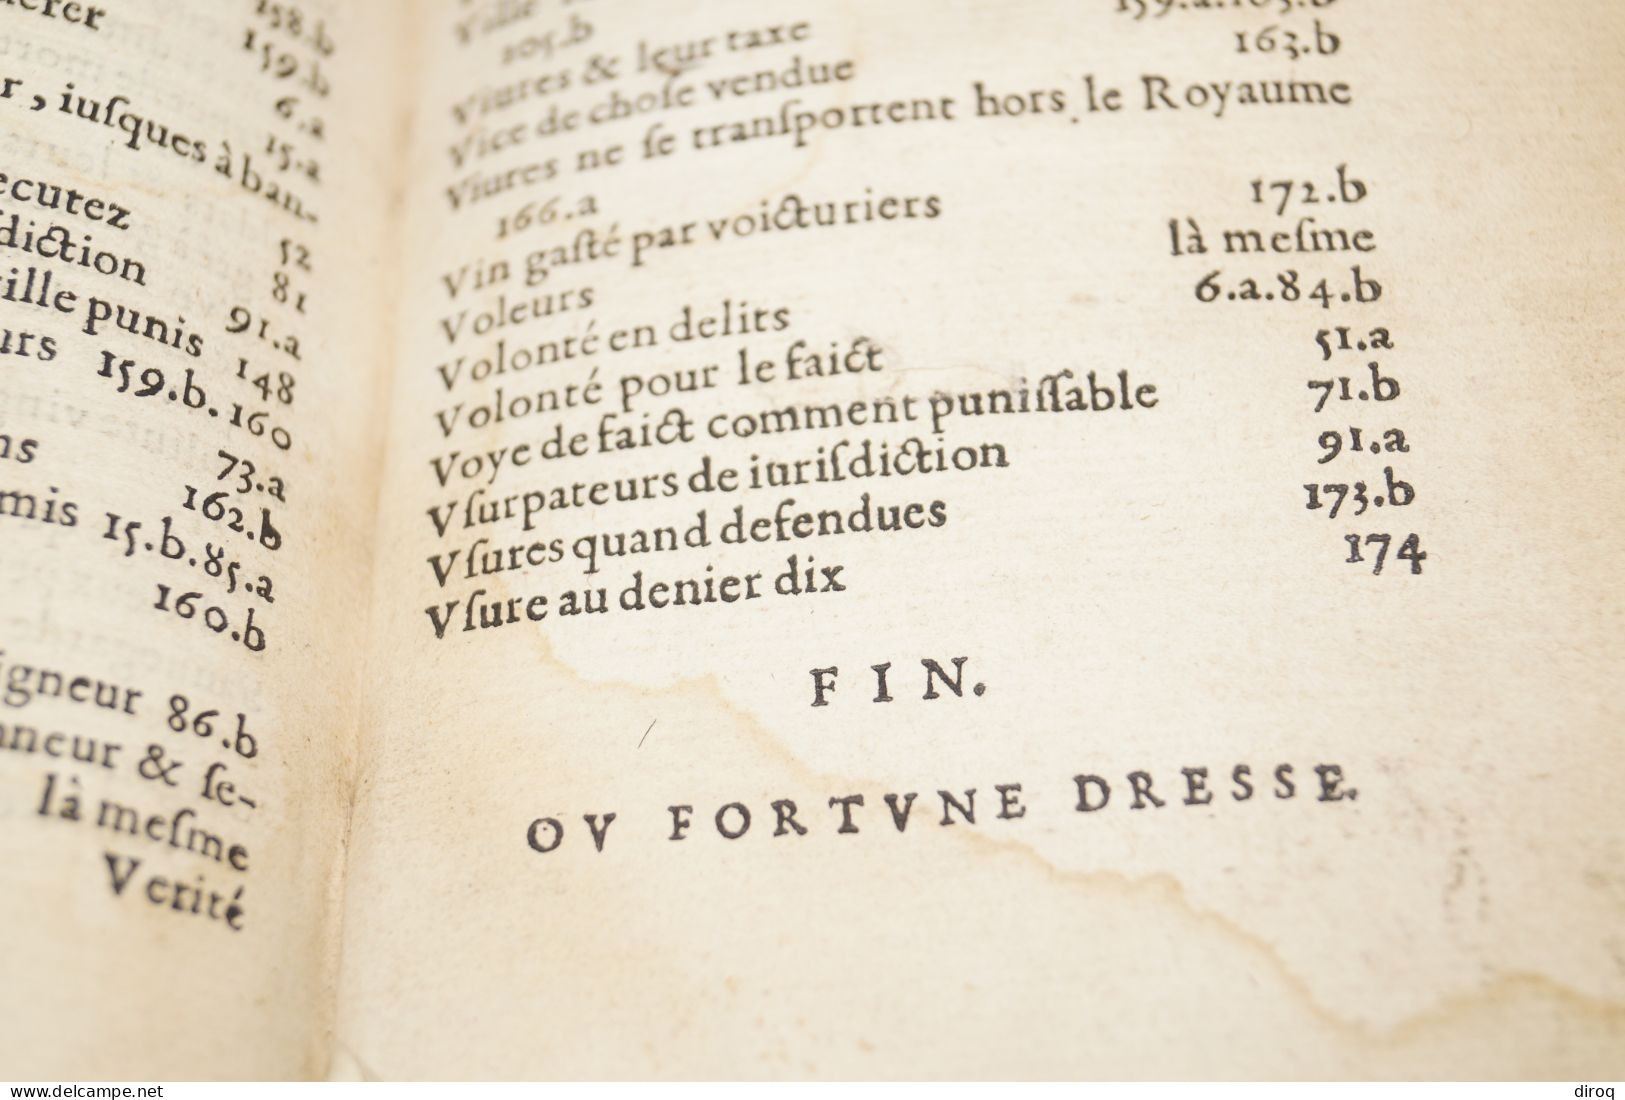 RARE 1573,Traité des peines et amandes pour matière criminelles,complet 175 pages,16 Cm./11 Cm.